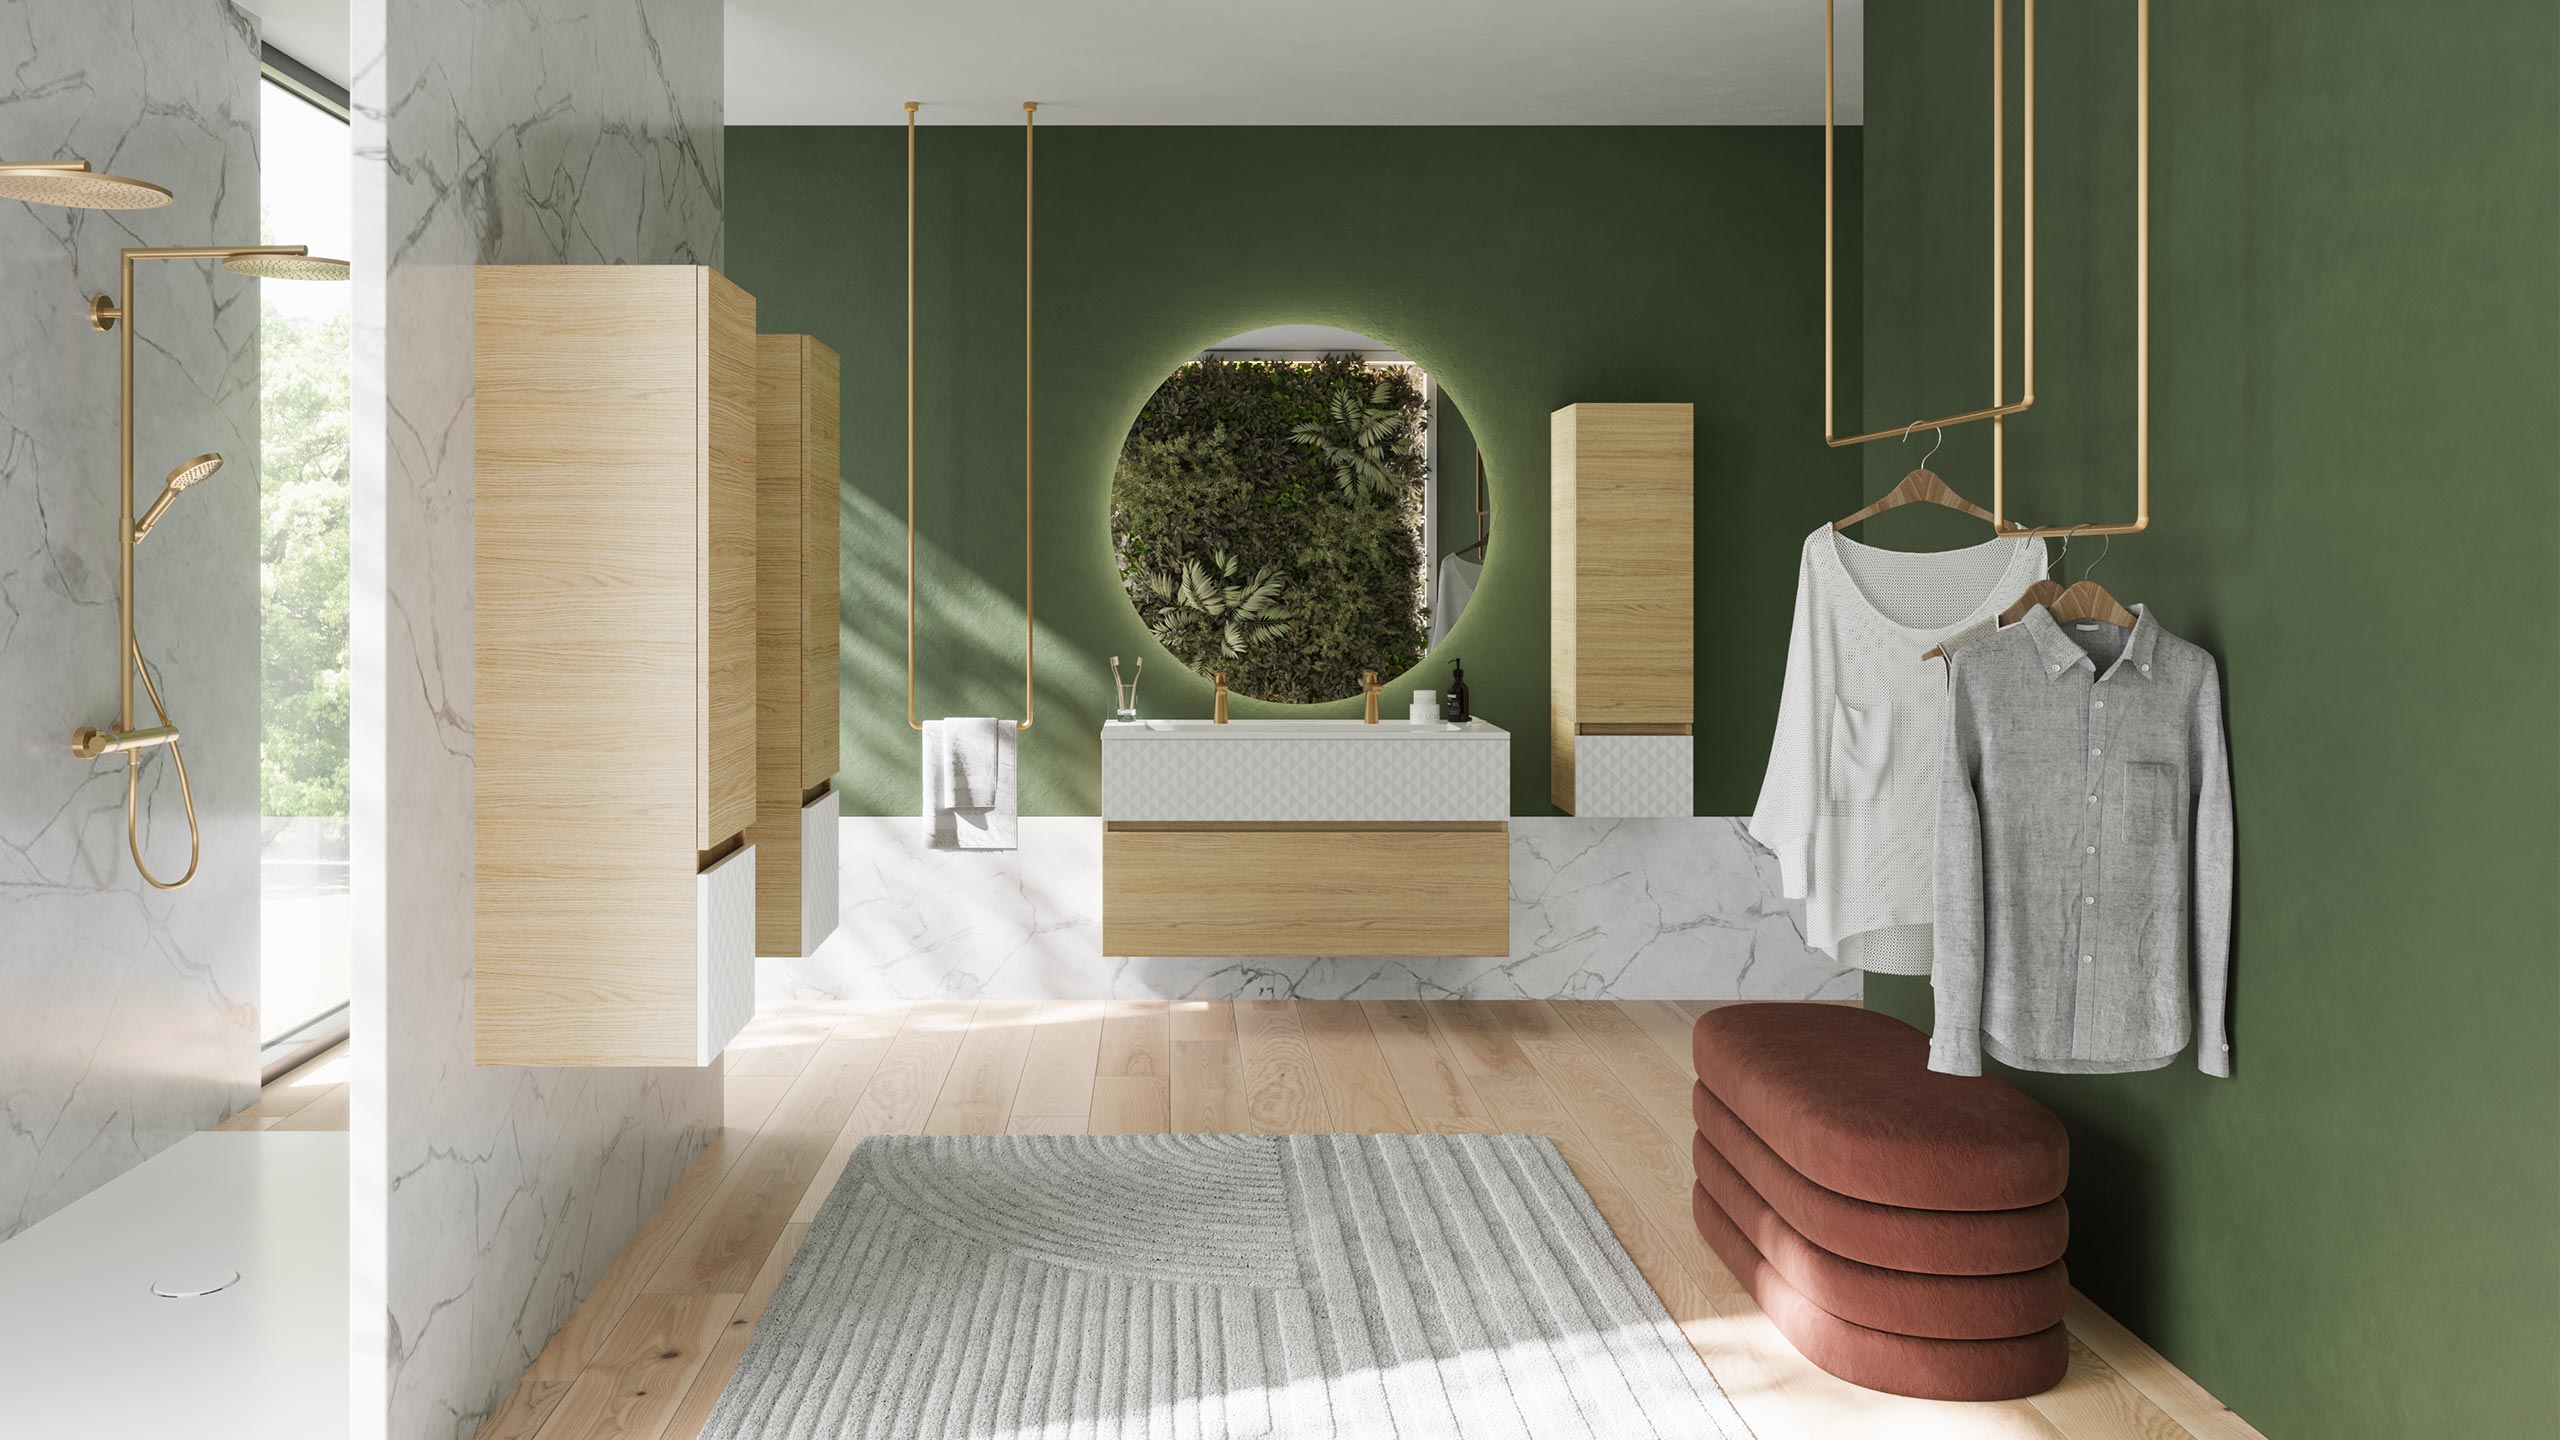 Optimiser l'espace dans la salle de bains - Ambiance bain - le blog